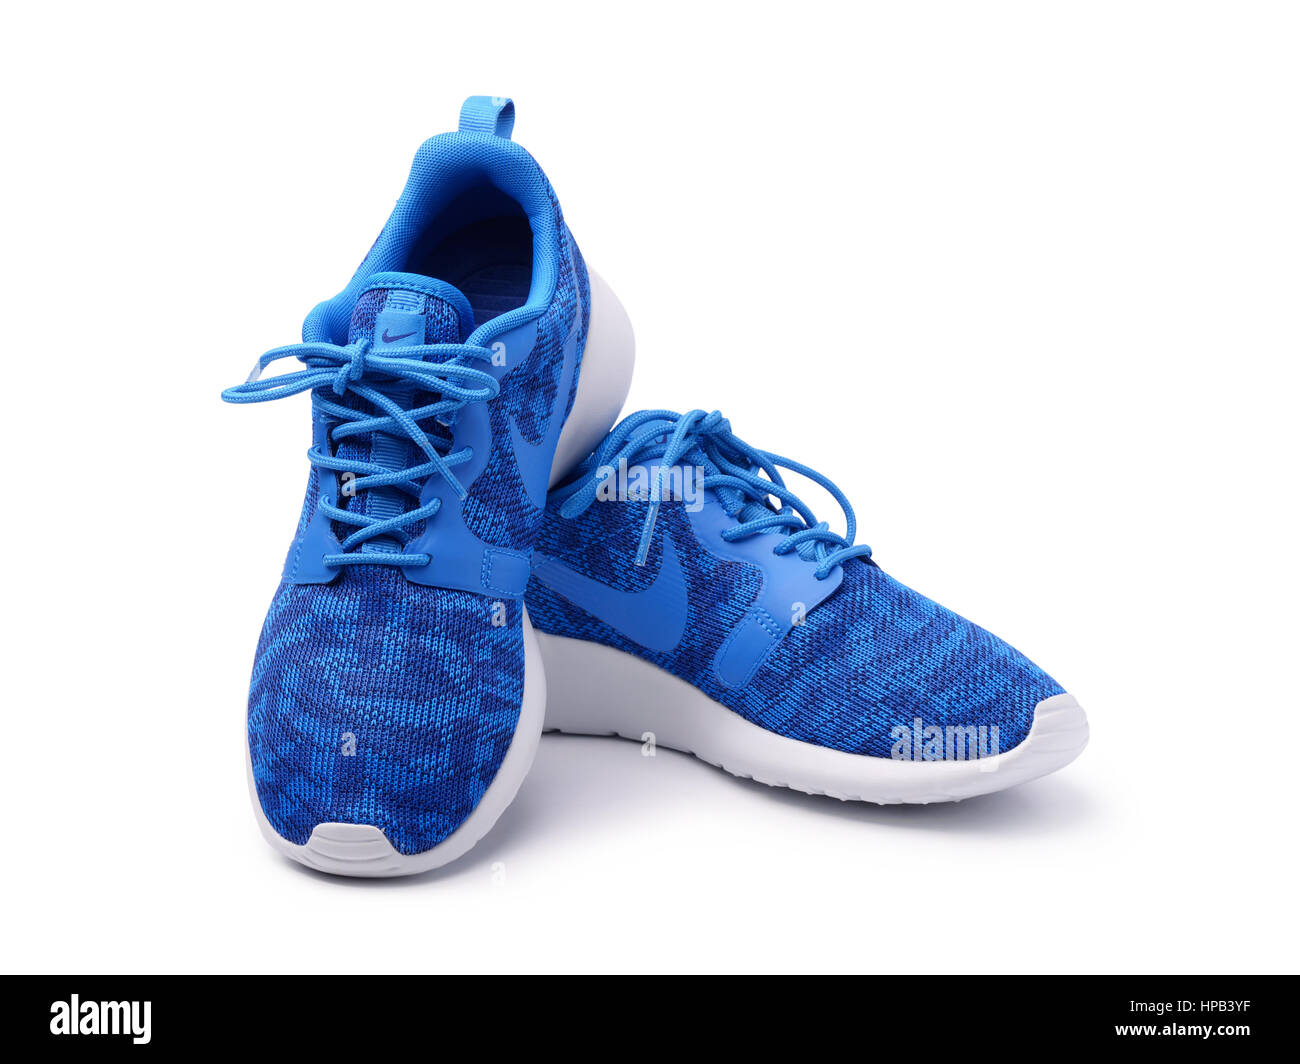 SAMARA, Russia - 8 Giugno 2015: femmina Nike sneakers per l'esecuzione,  formazione in grigio e blu, che mostra il logo Nike, editoriale  illustrativa Foto stock - Alamy